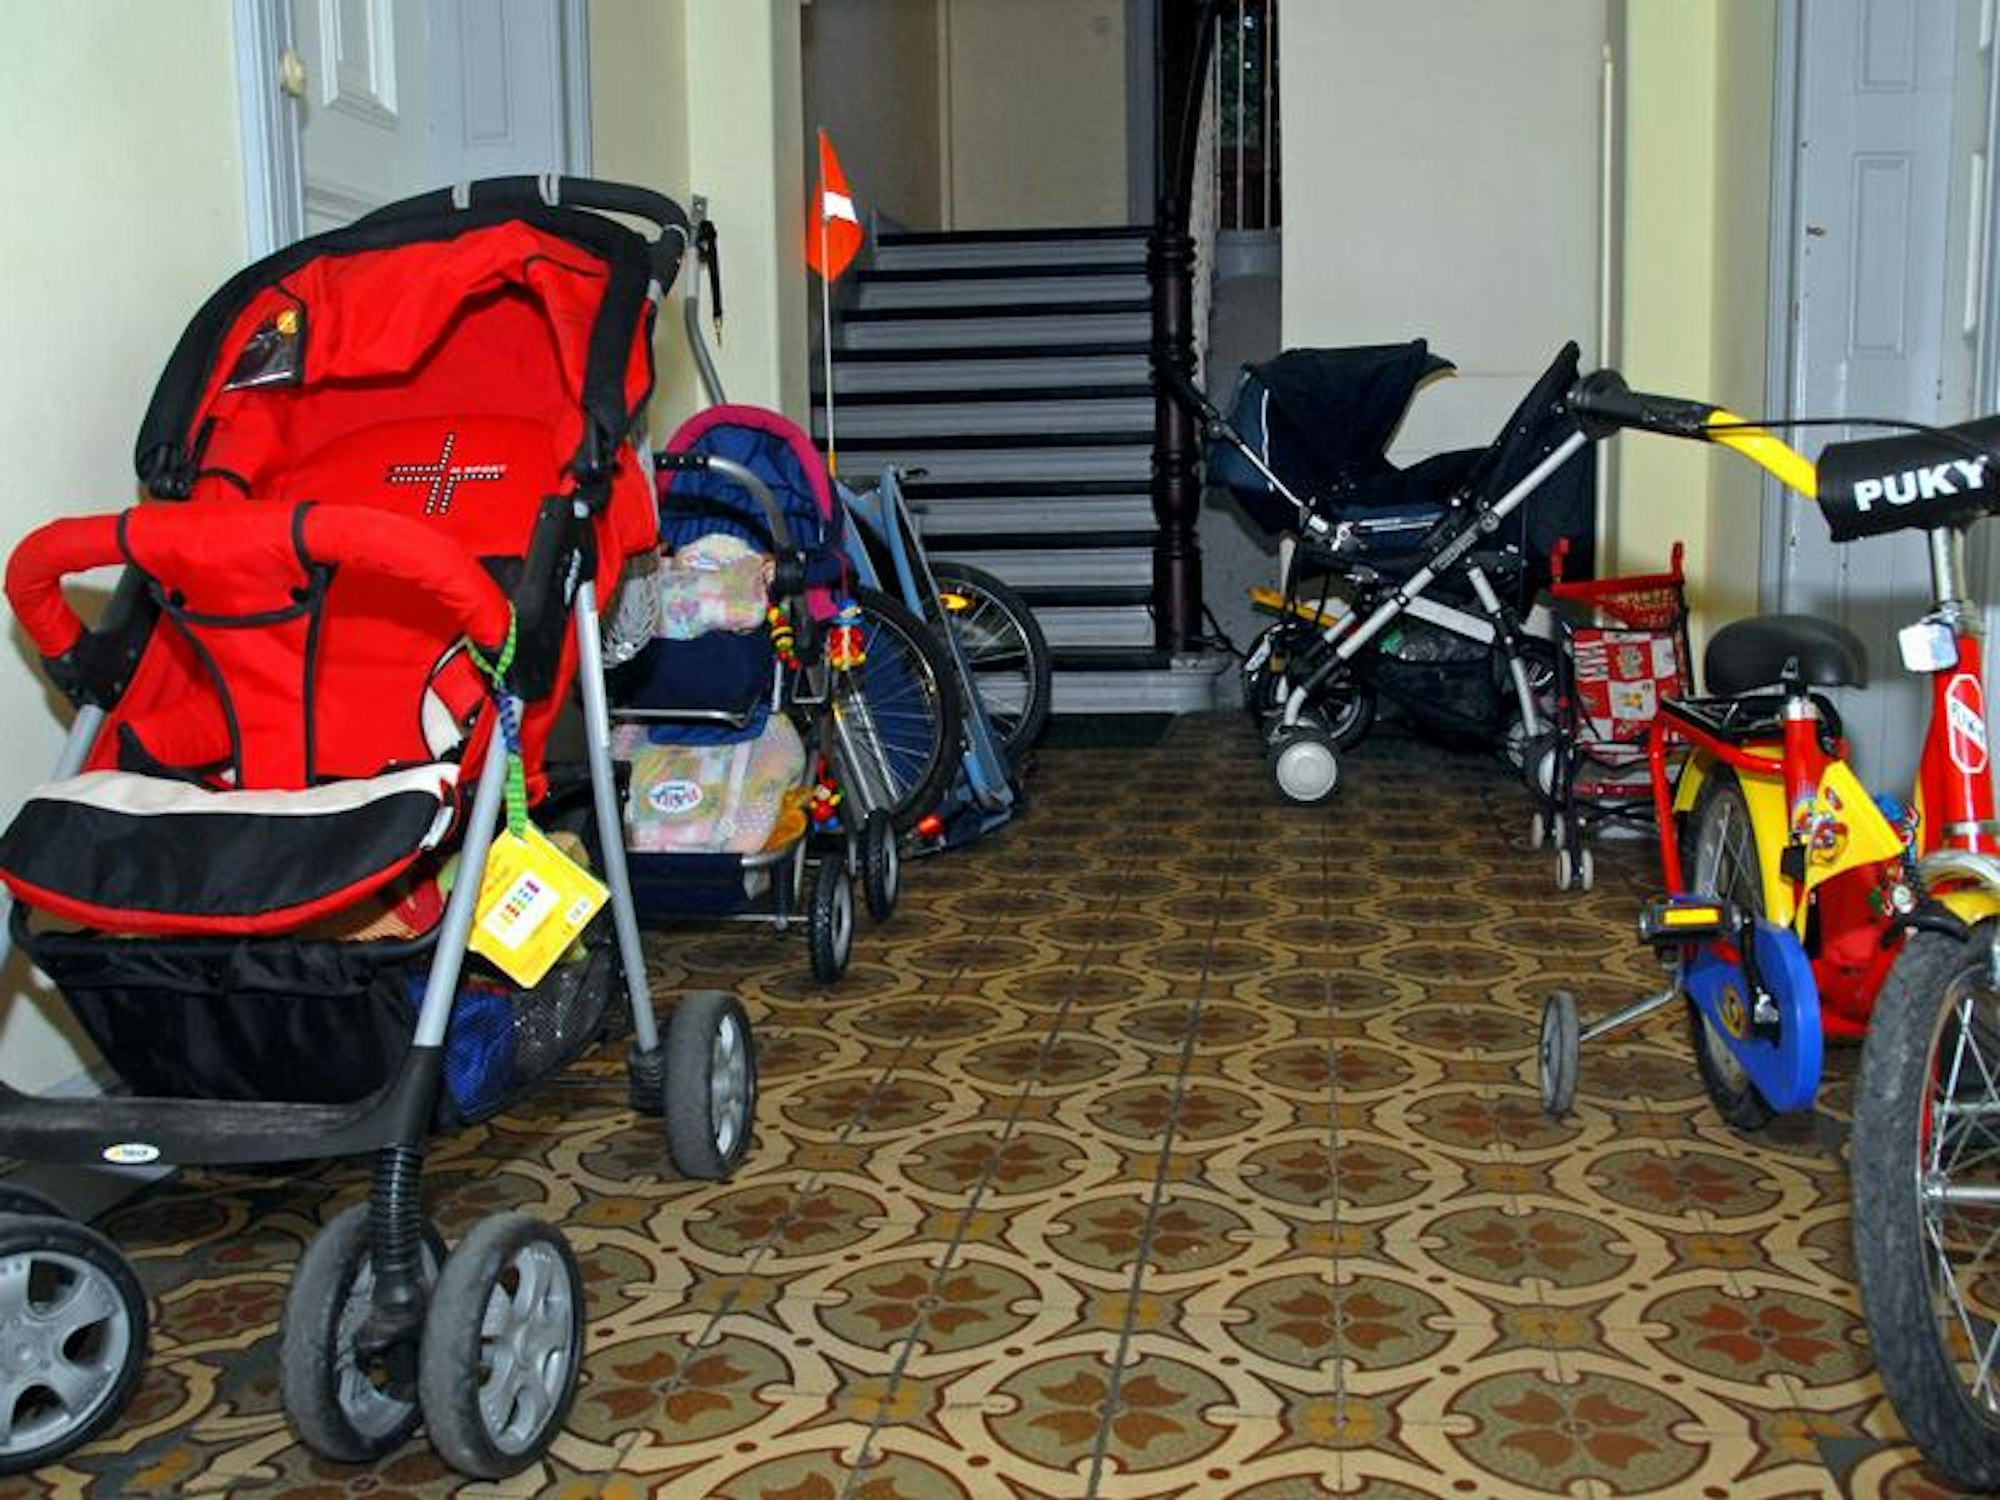 Kinderwagen-Fuhrpark im Treppenhaus - ist das erlaubt?